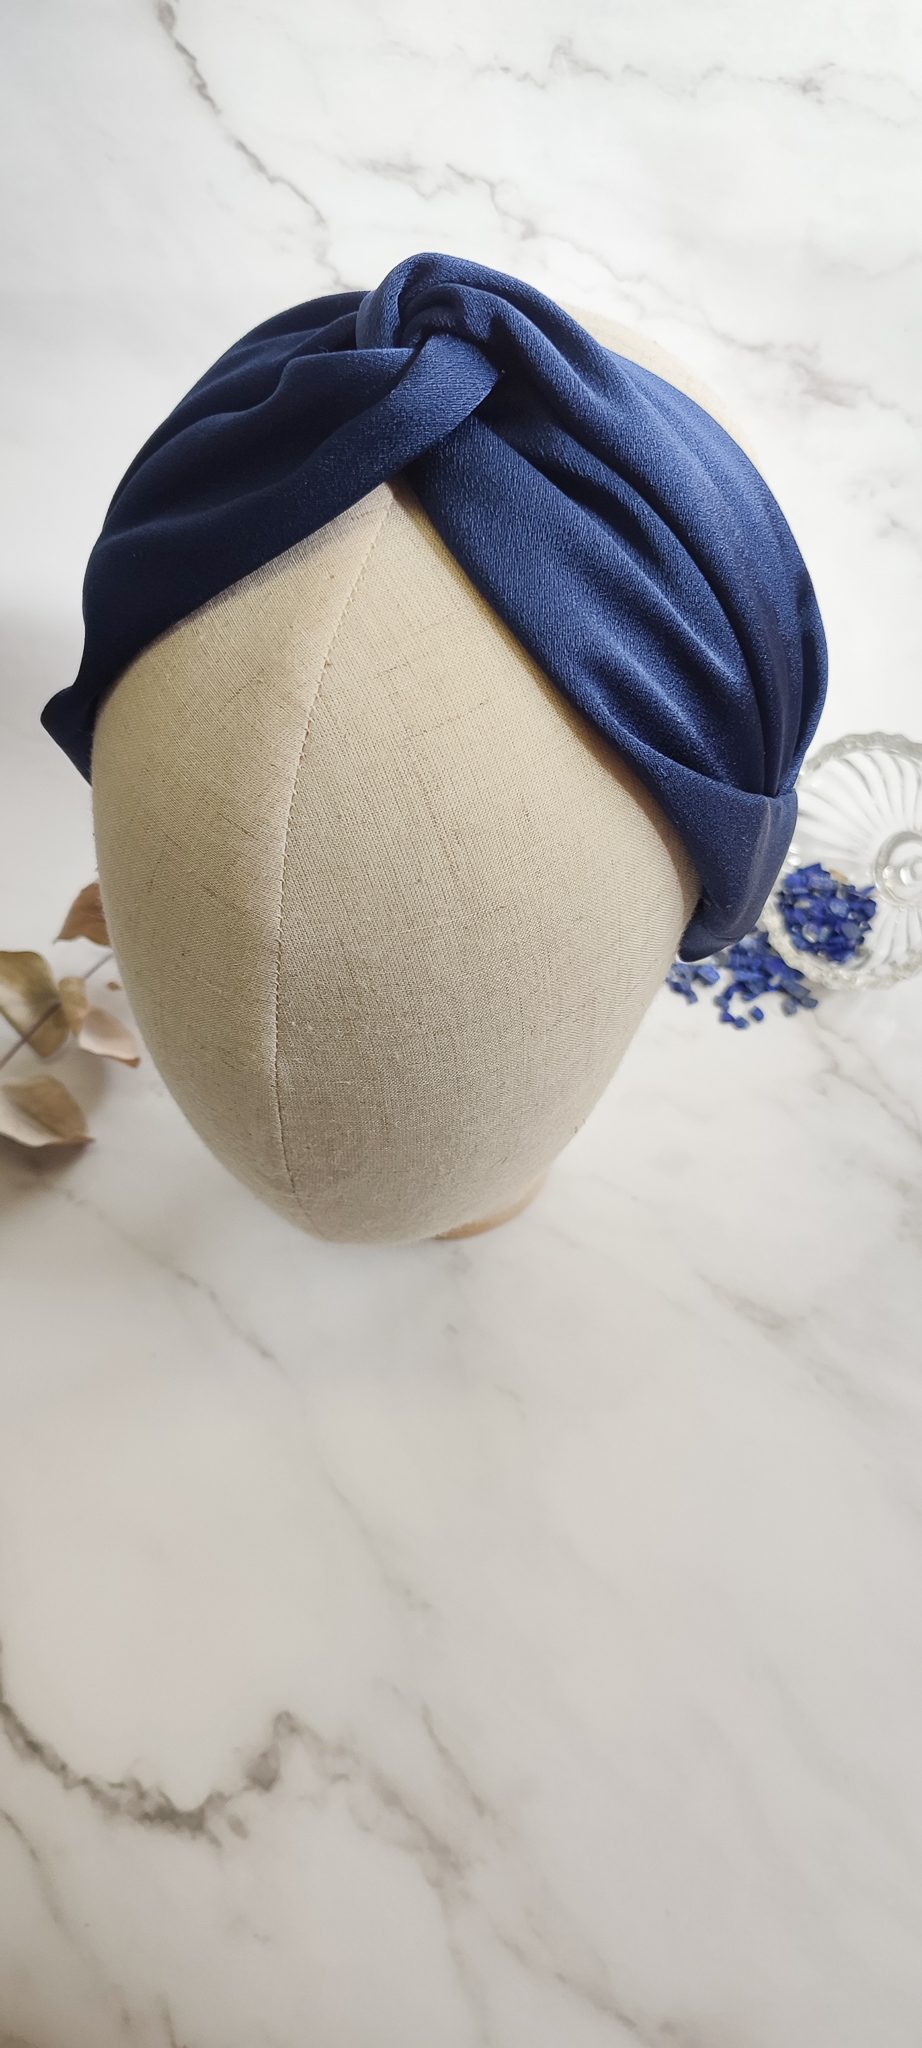 diadema turbante para invitada a boda en seda azul marino